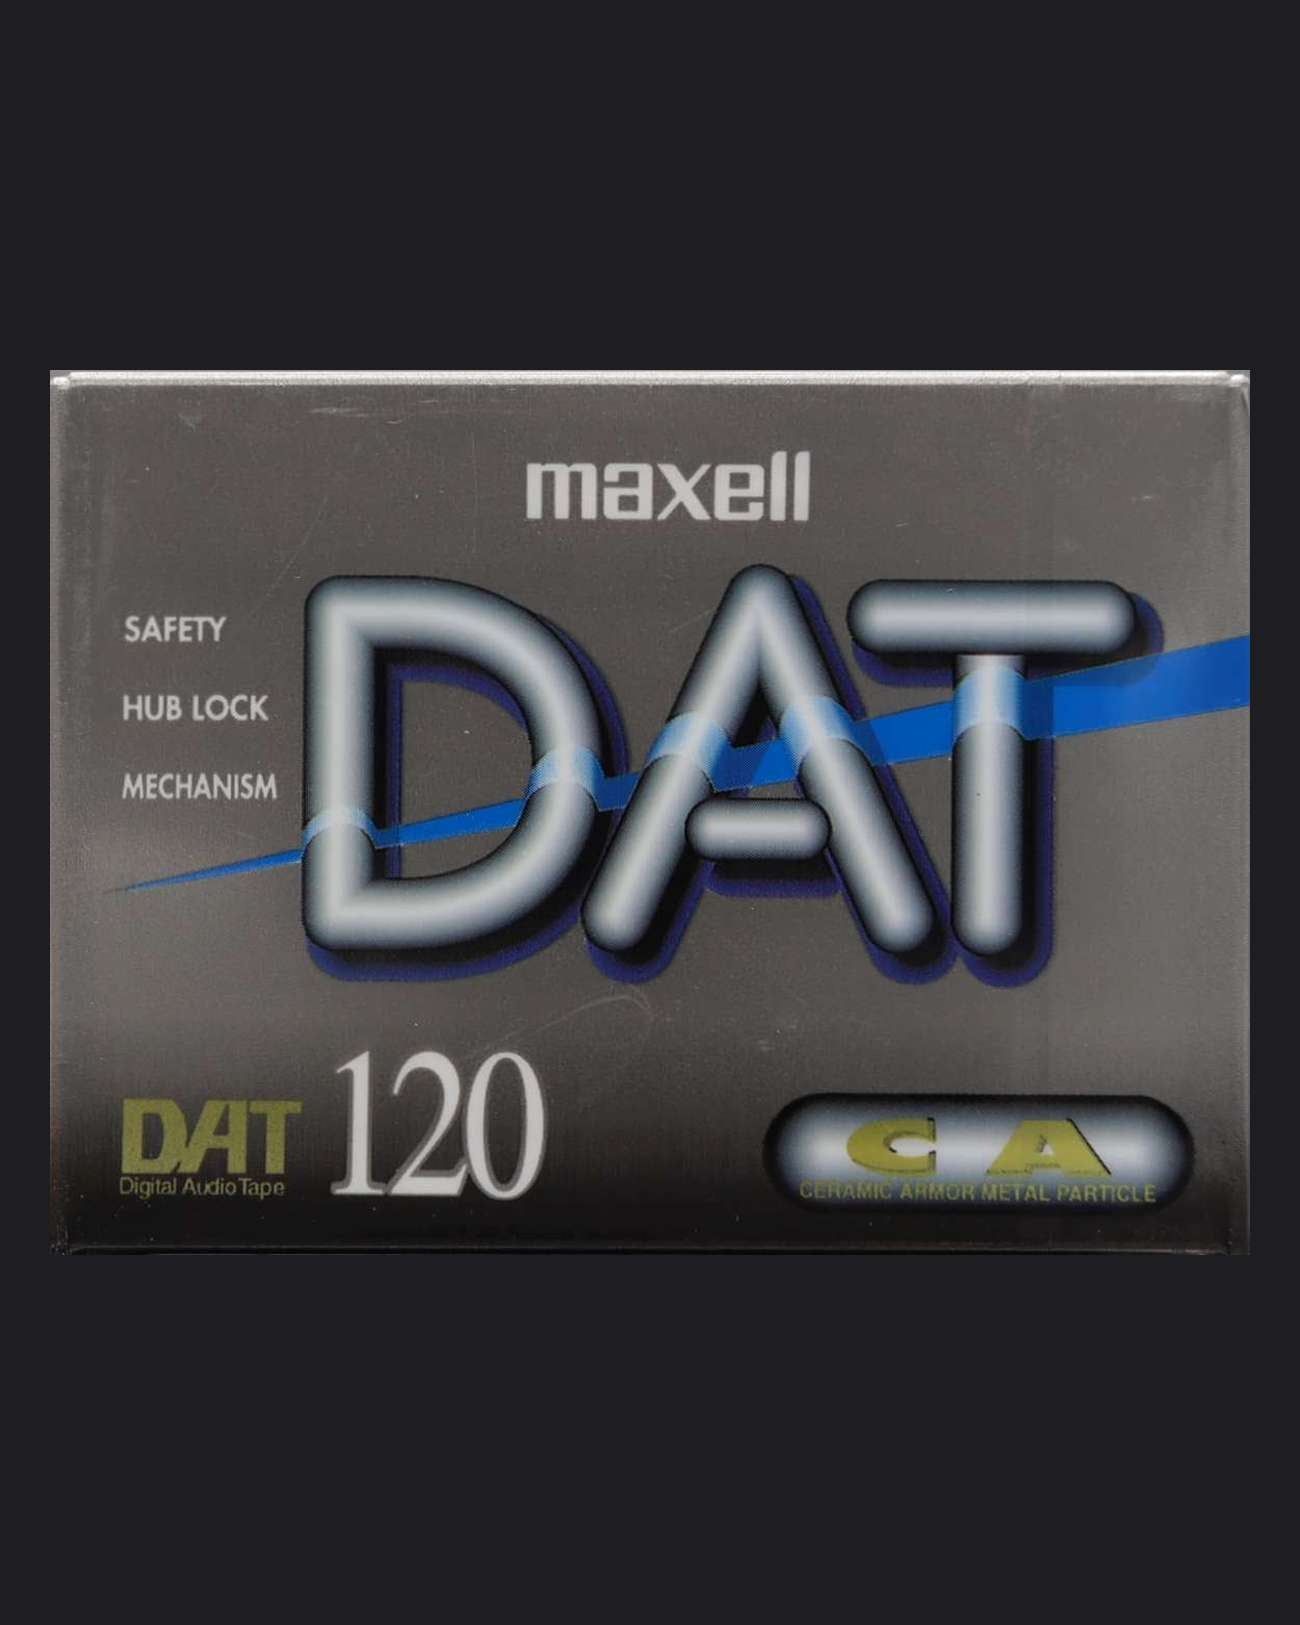 Maxell DAT DM-D